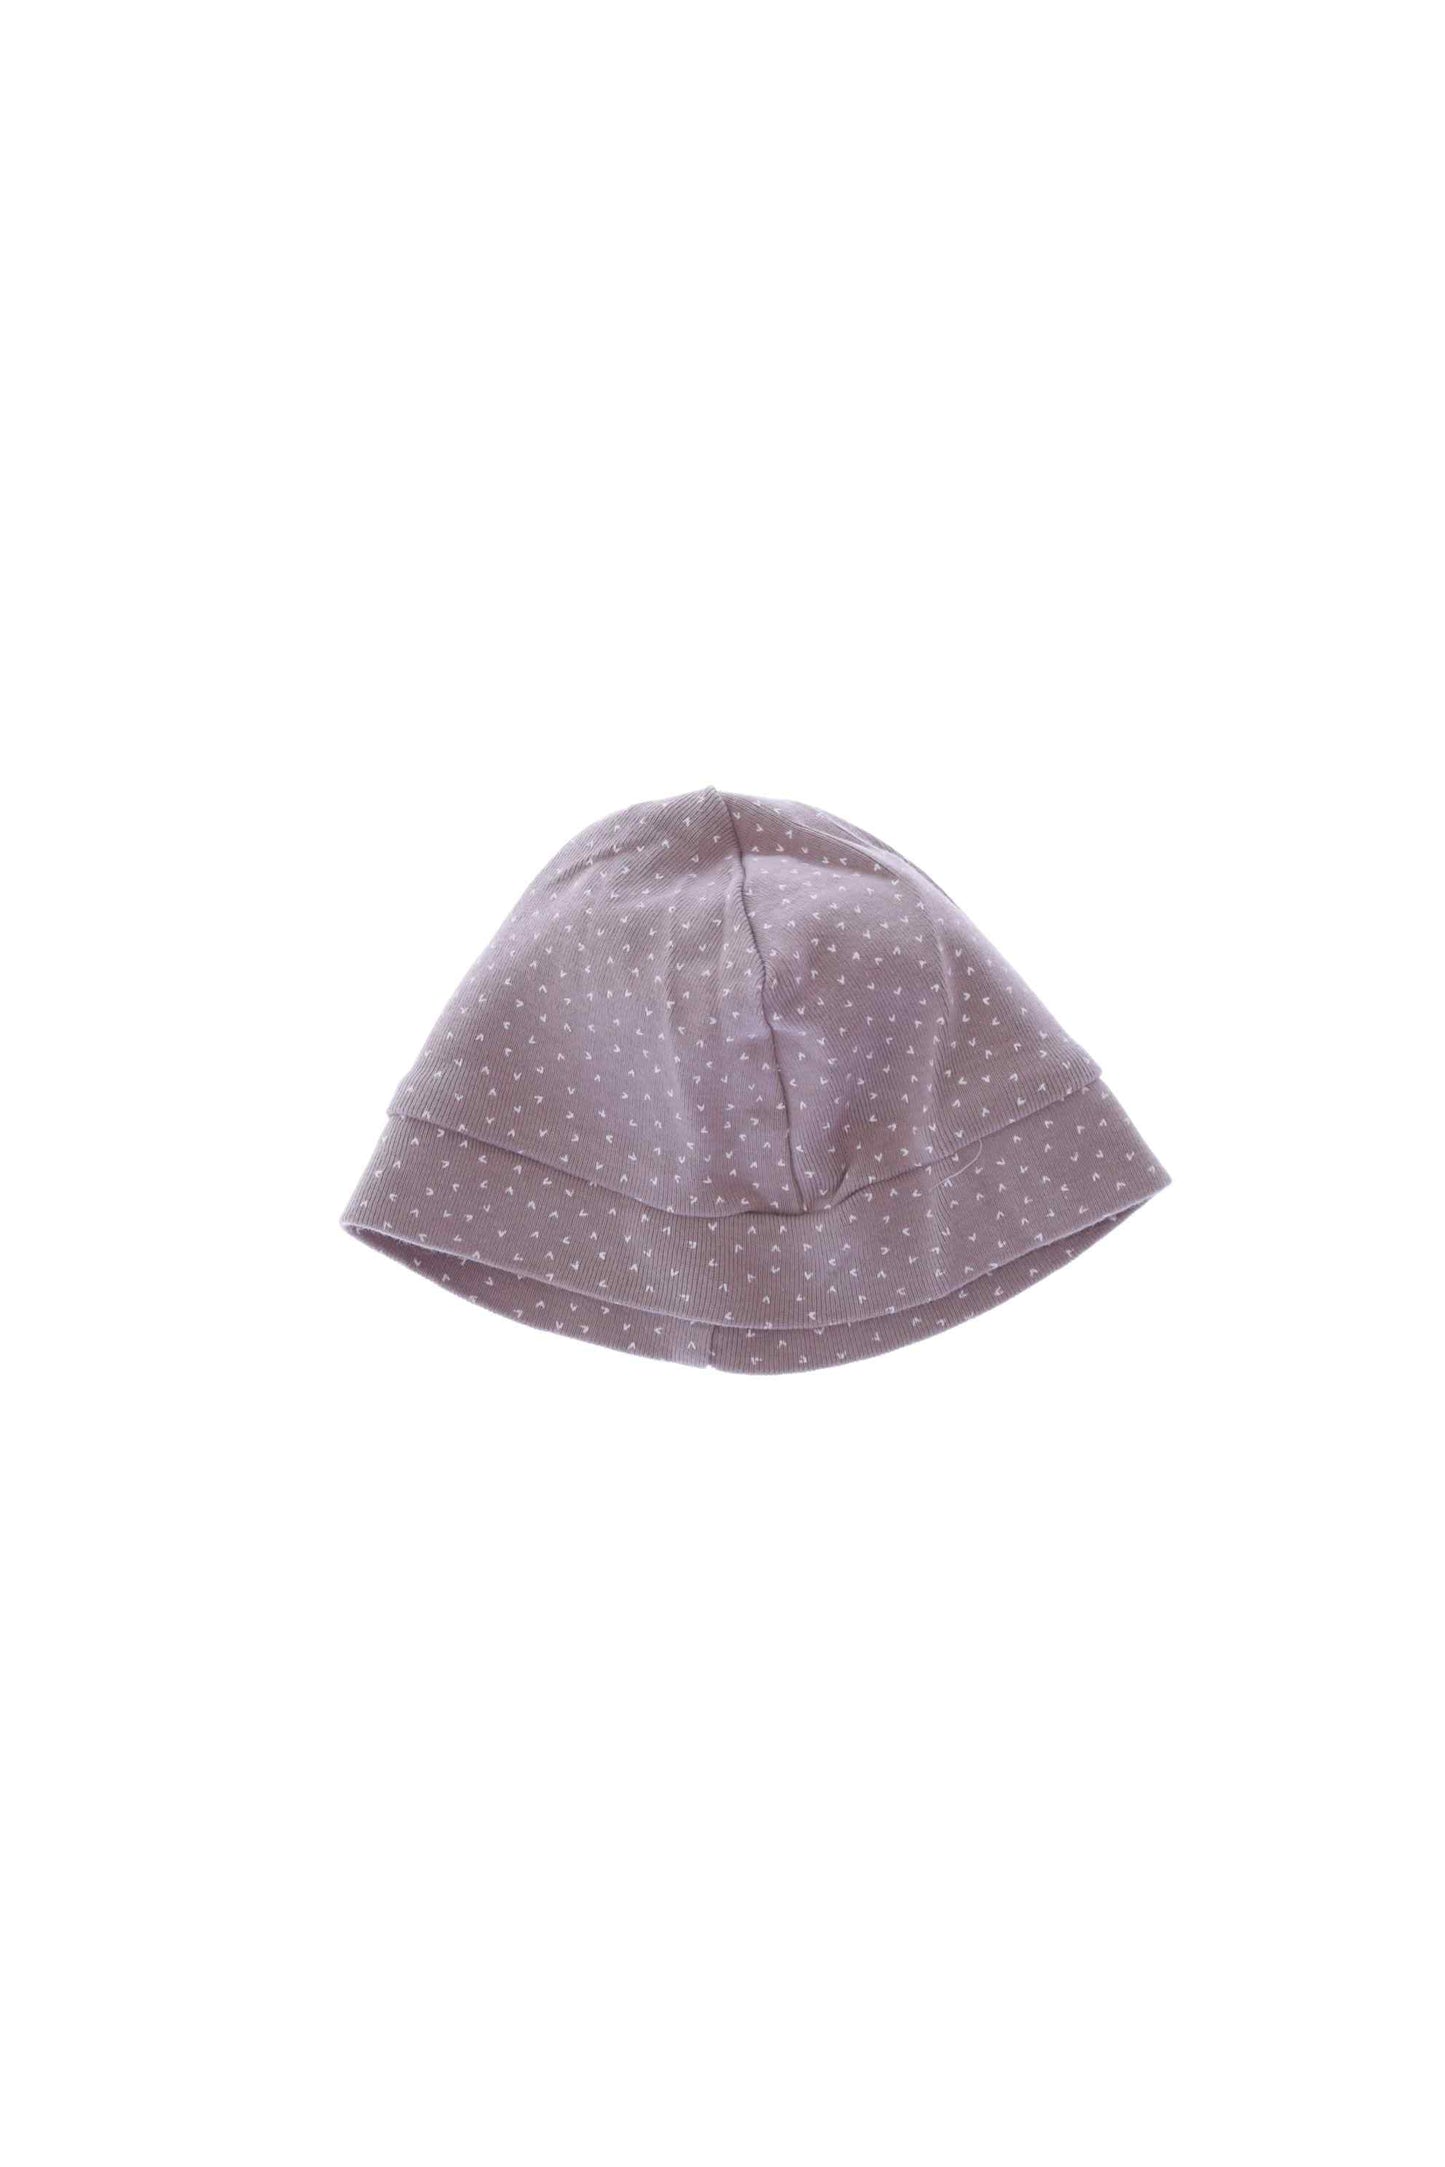 Καπέλο / Σκούφος H&M (Νεογέννητα - 3 μηνών)